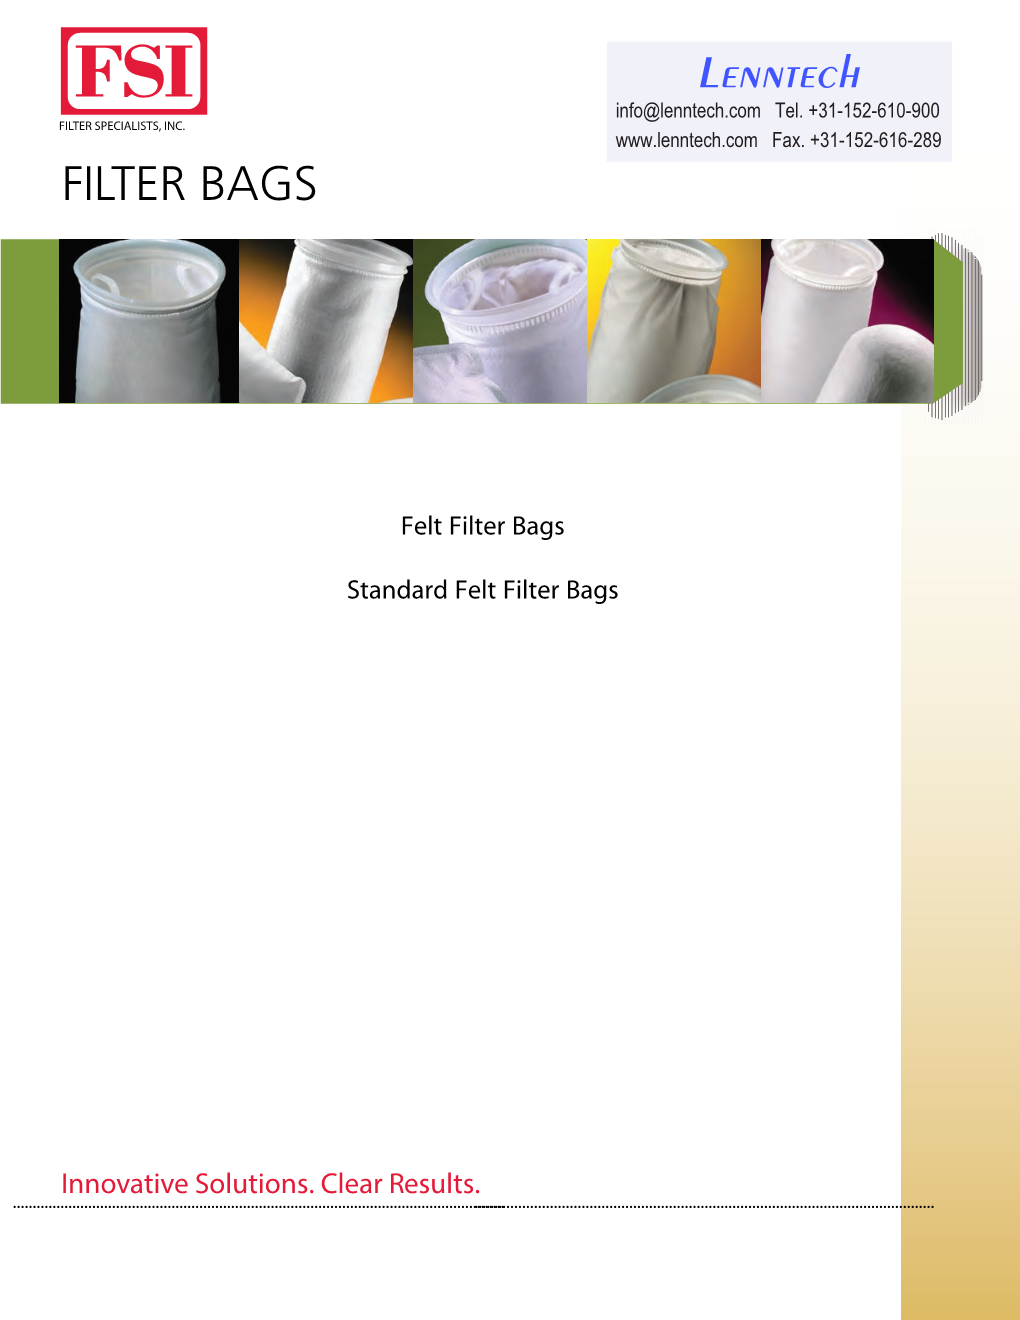 Standard Felt Filter Bags